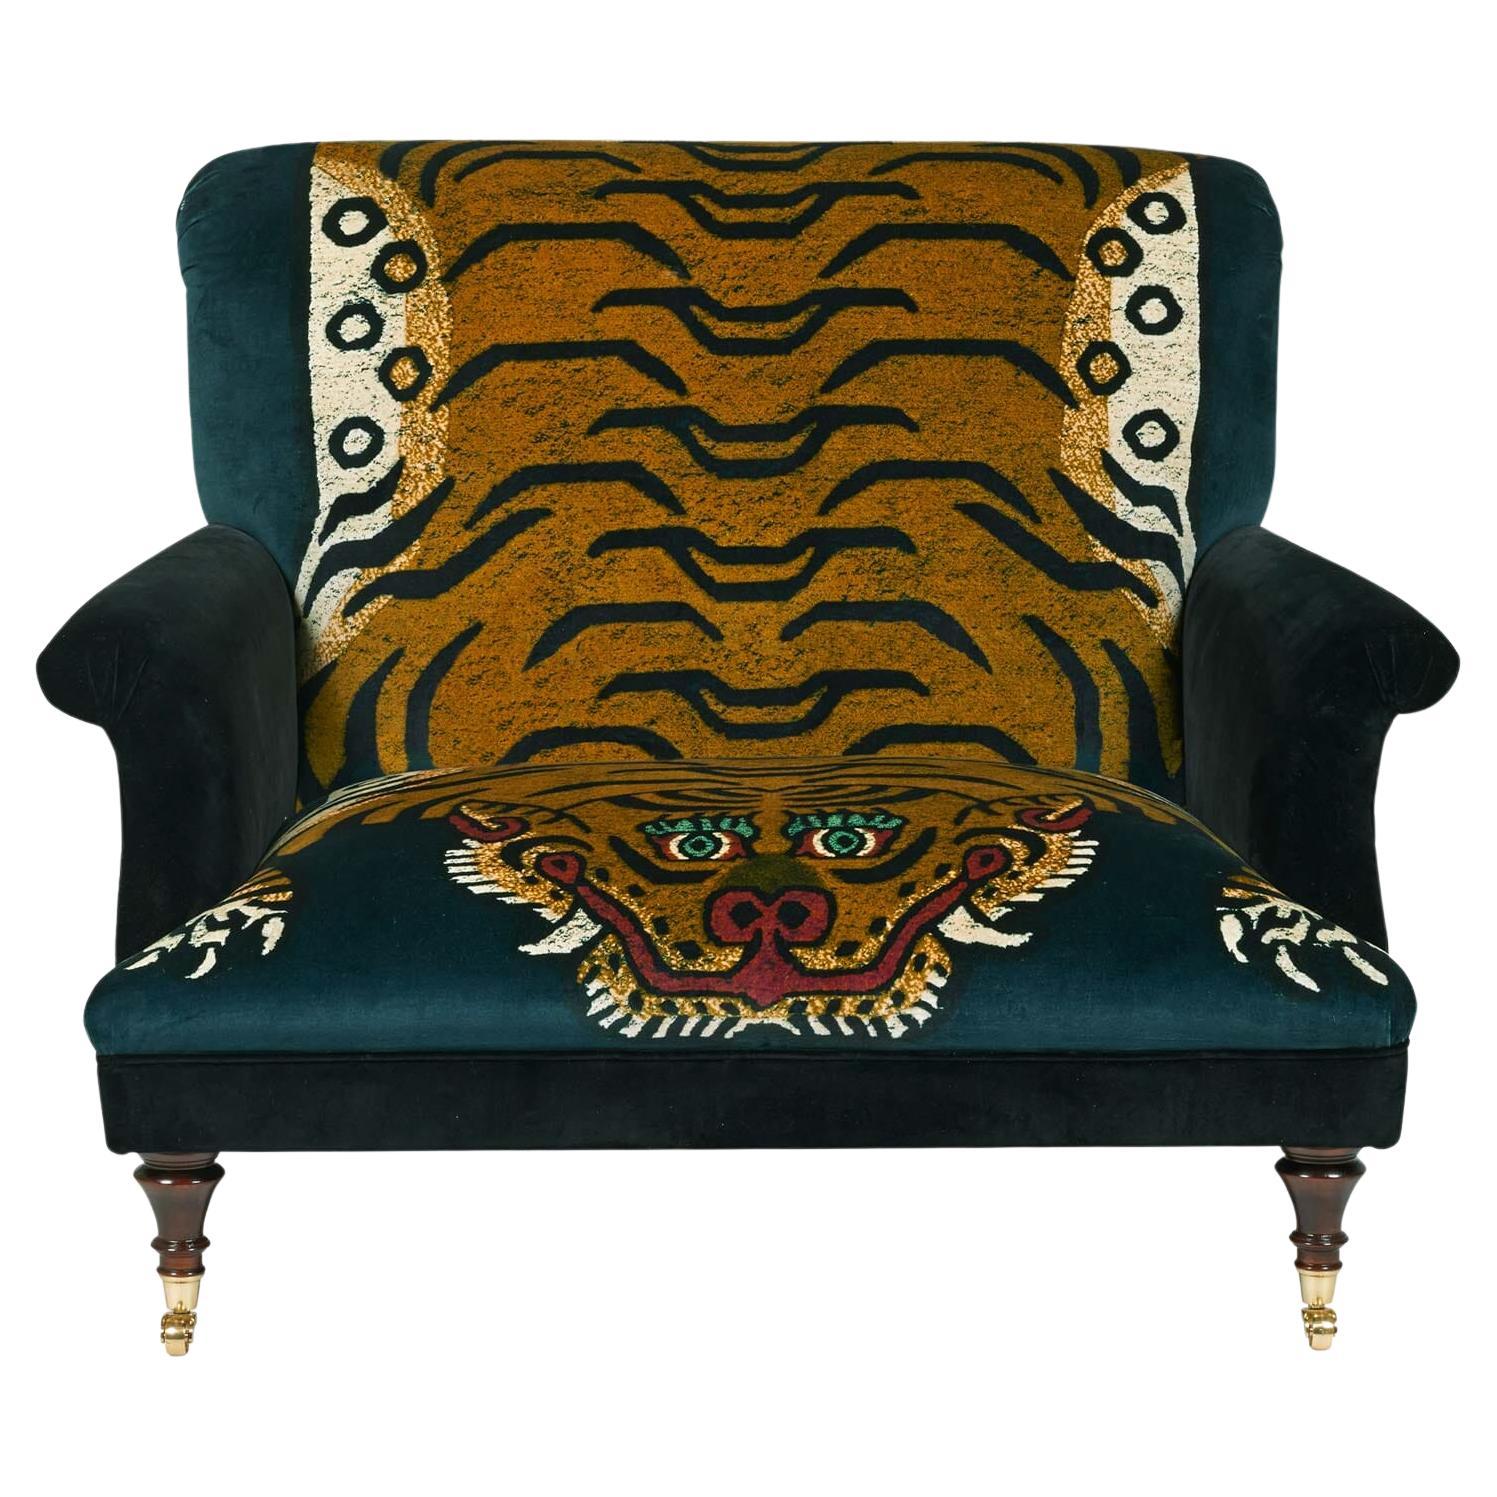 BLOOMSBURY Velvet Chair - SABER LOVE SEAT